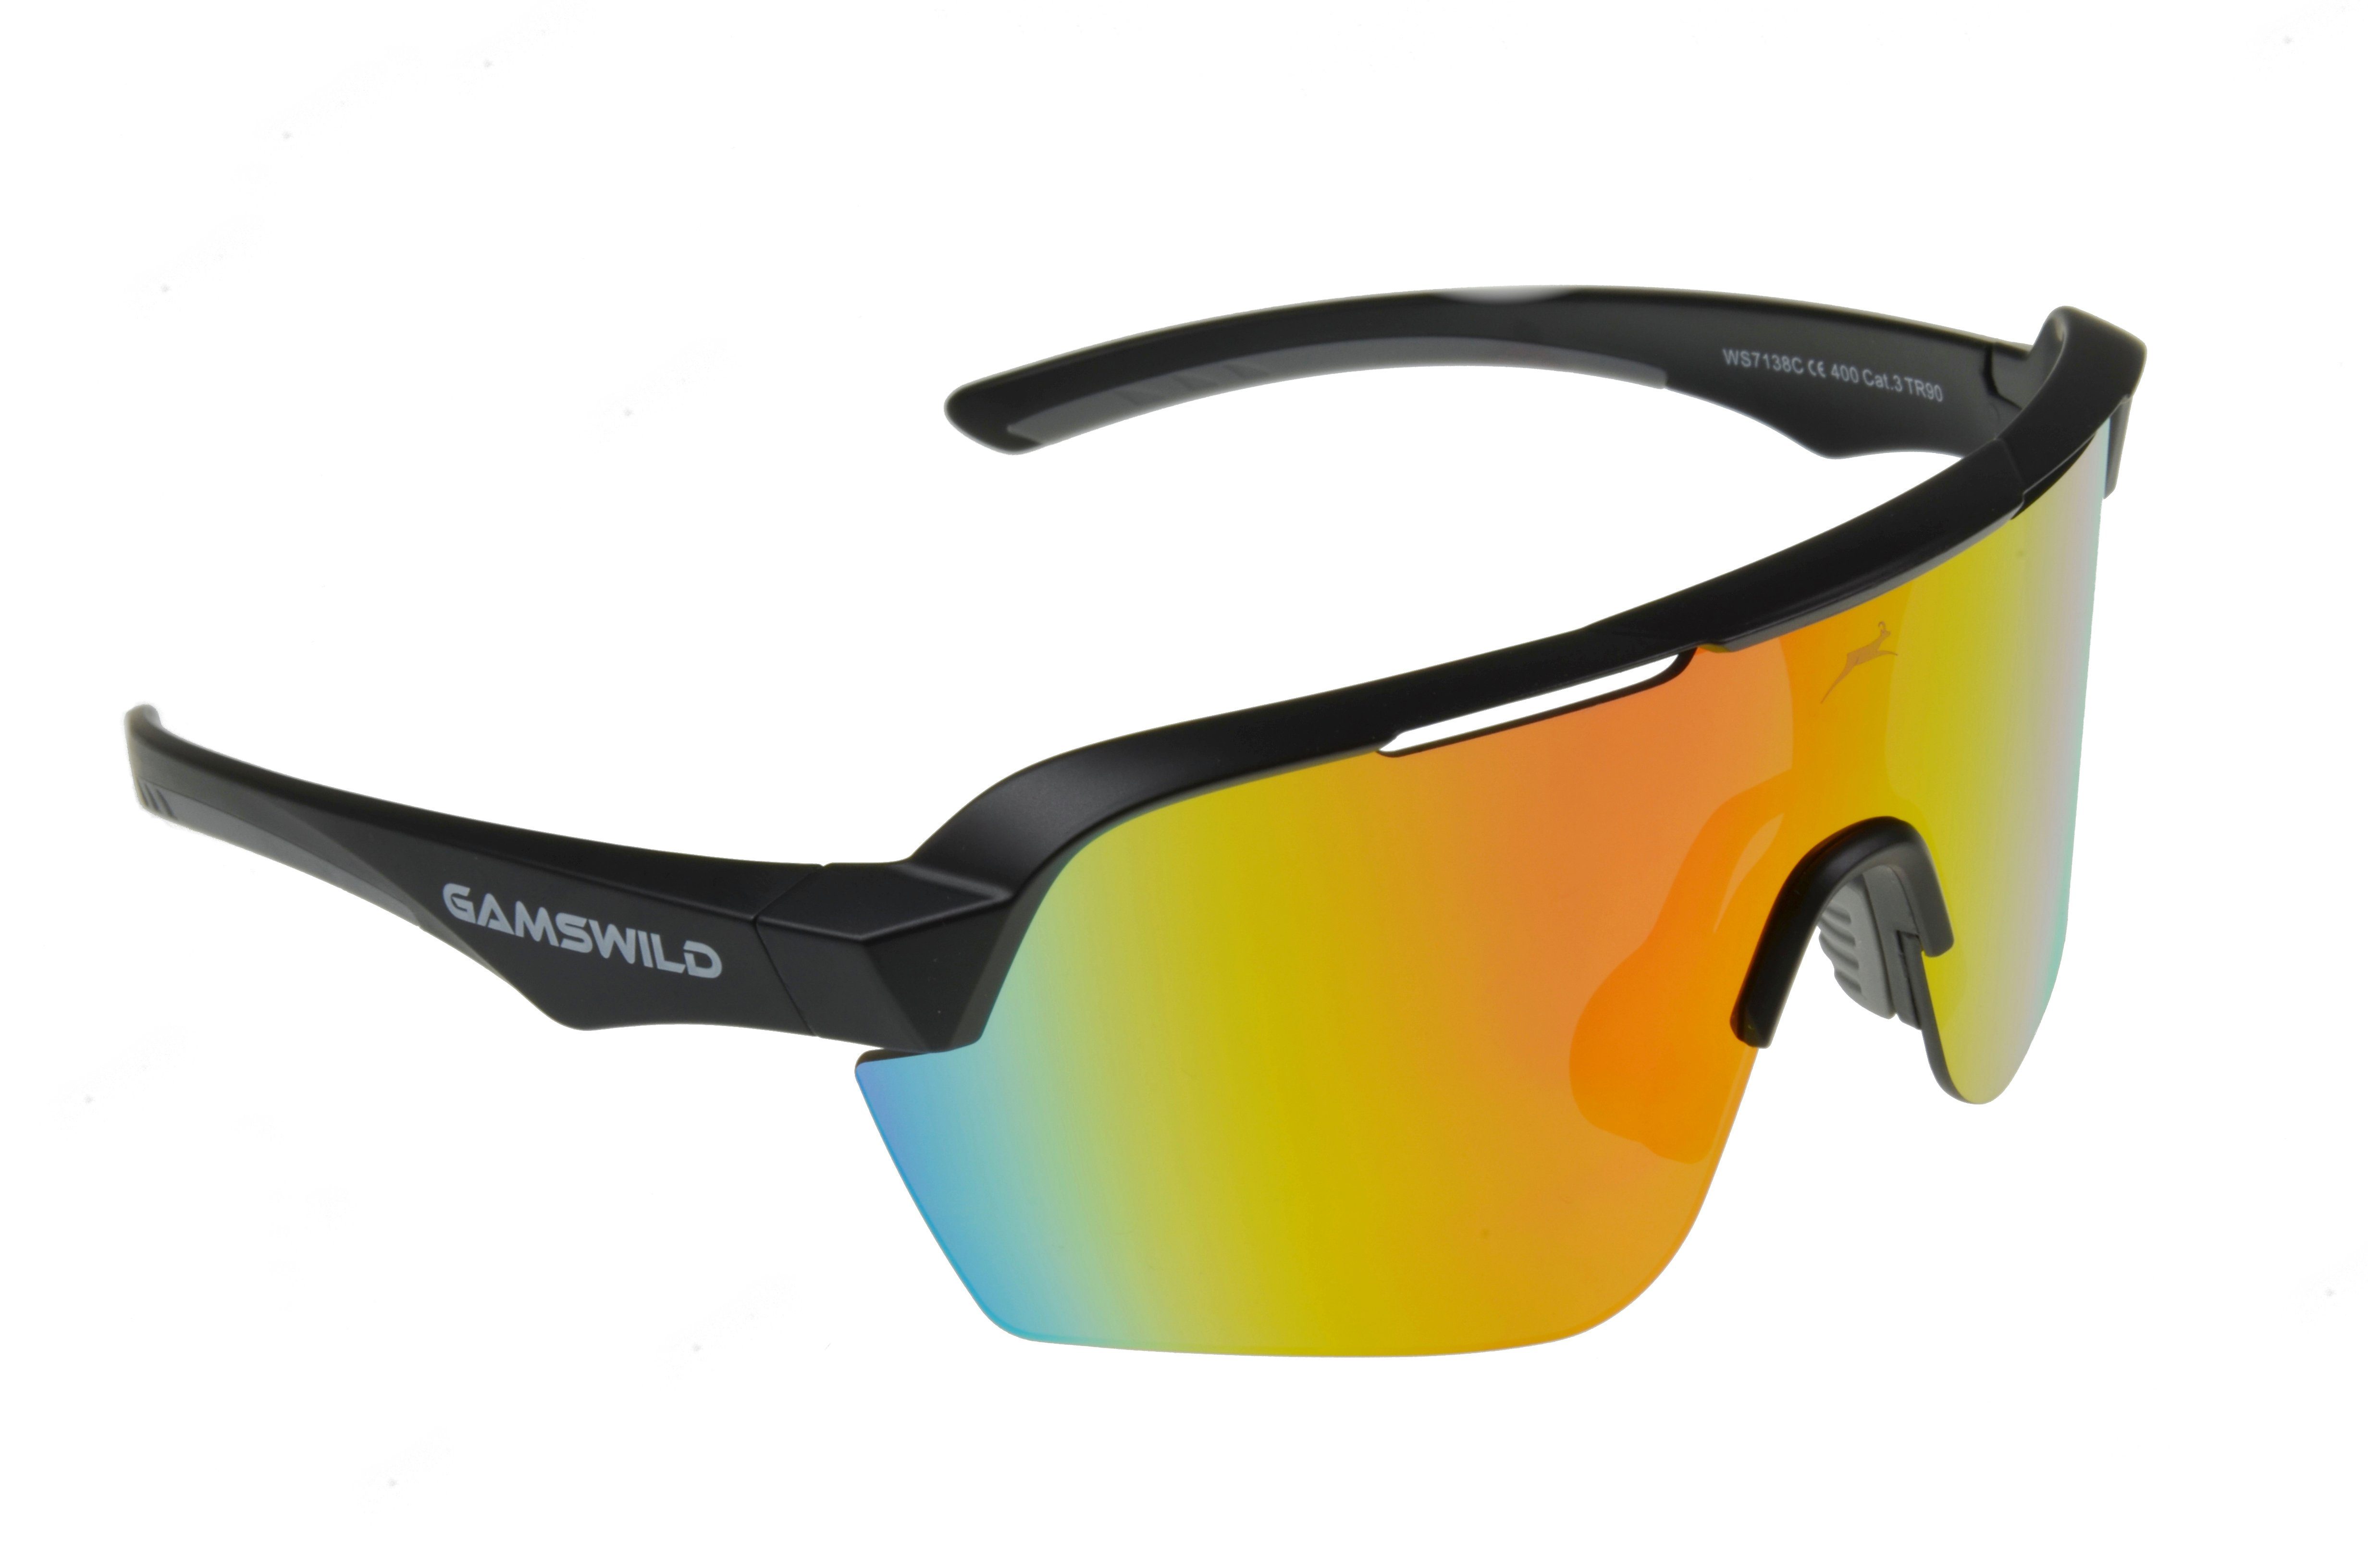 Gamswild Sportbrille »WS7138 Sonnenbrille Fahrradbrille Skibrille Damen  Herren Unisex, pink, mintgrün, schwarz«, extra große Scheibe online kaufen  | OTTO